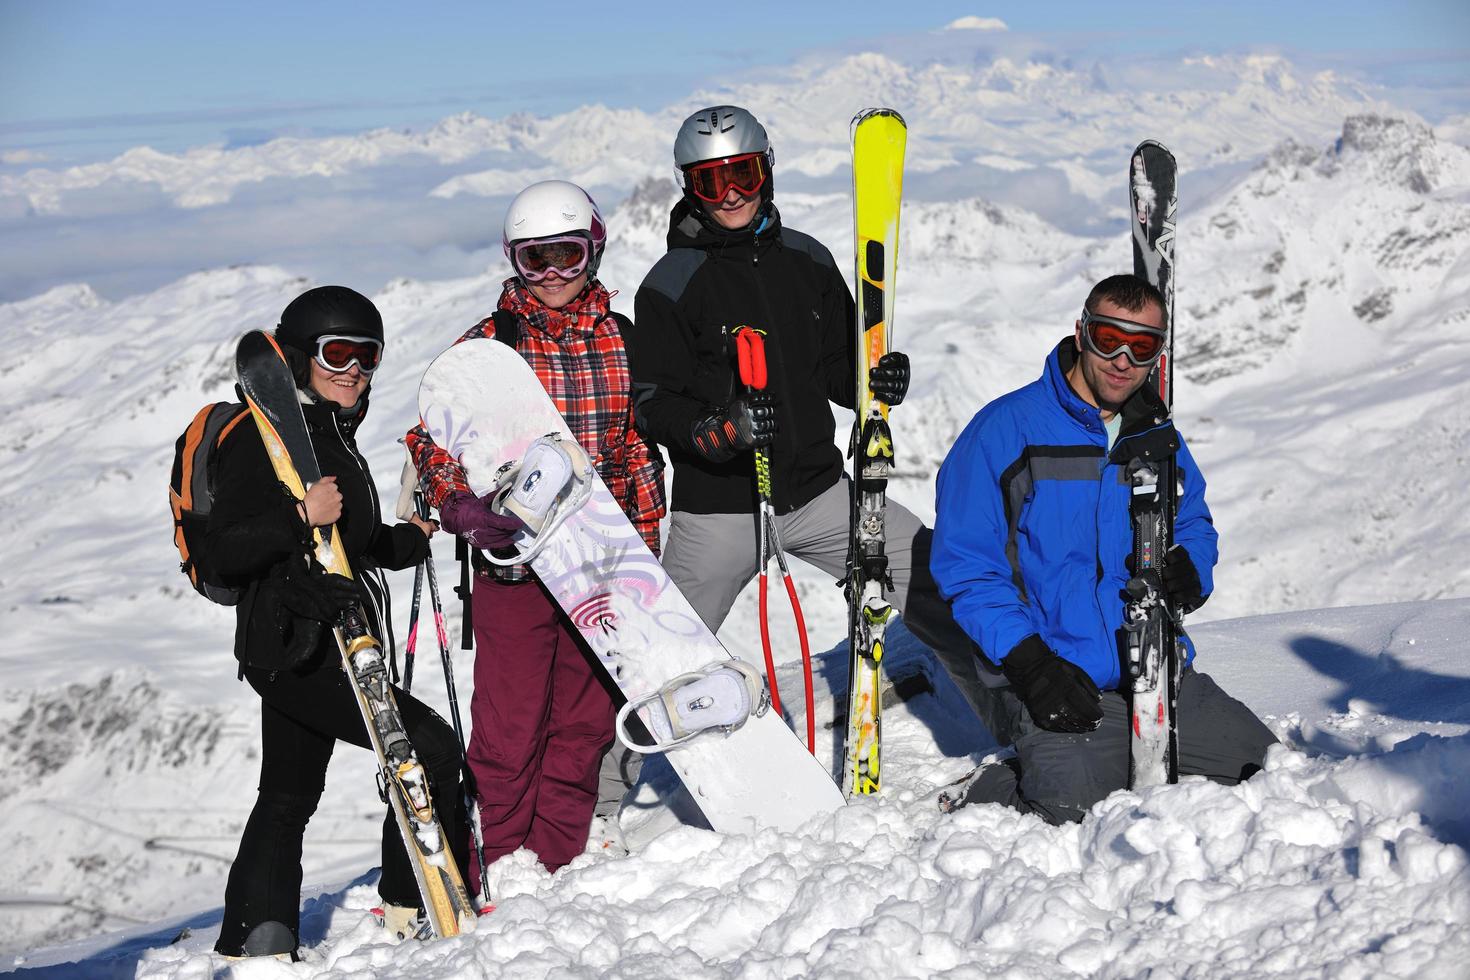 grupo de pessoas na neve na temporada de inverno foto